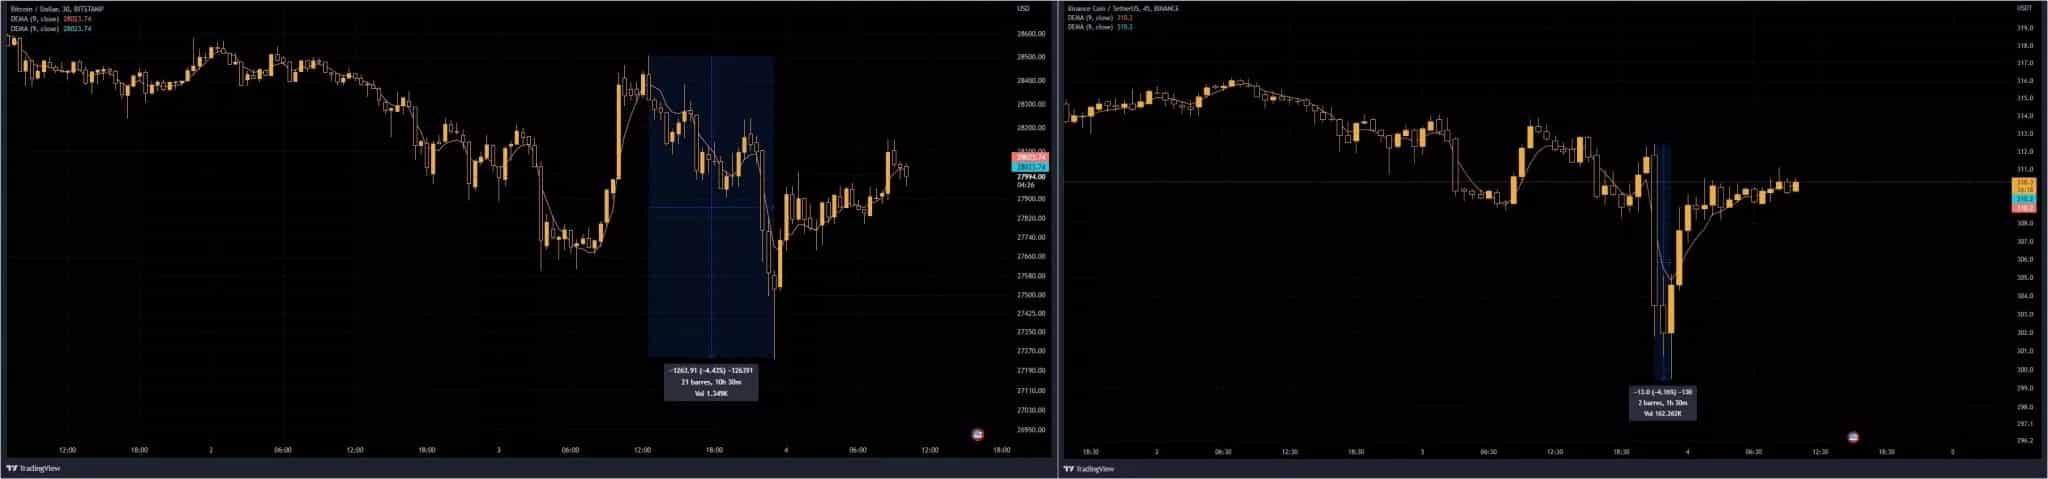 Obrázek 1 - Ceny Bitcoinu (vlevo) a BTC (vpravo)